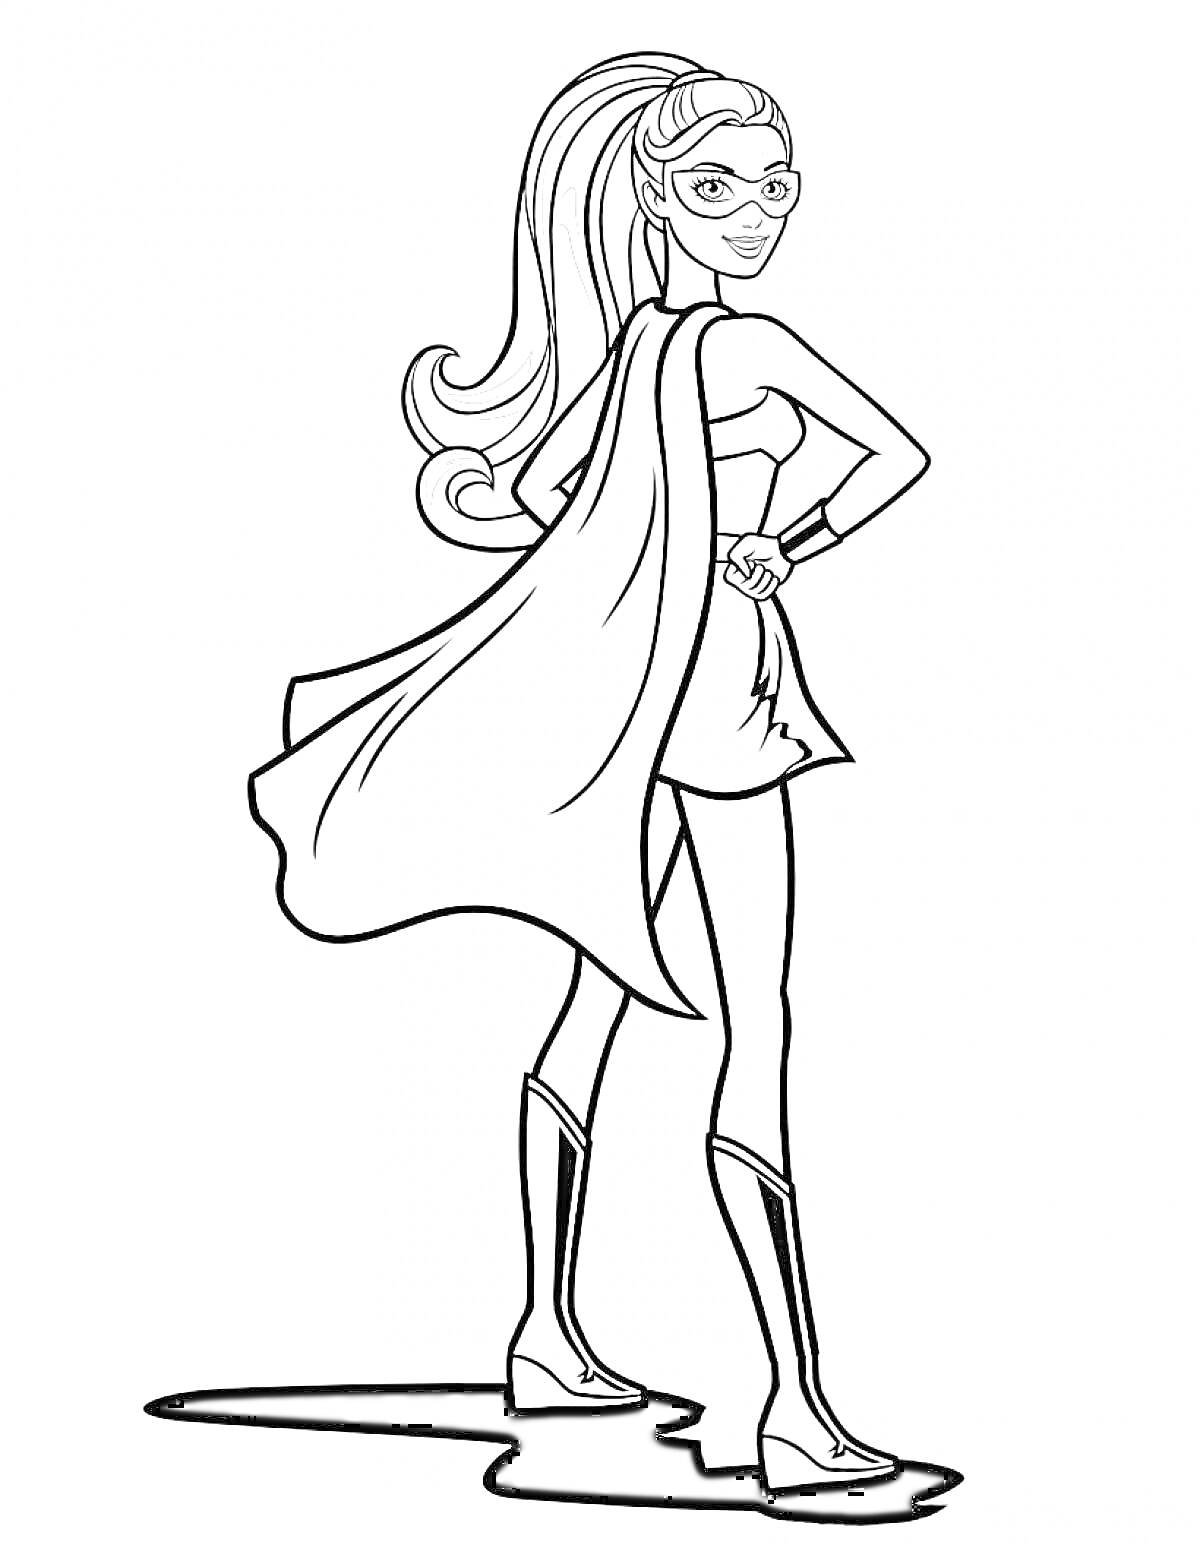 Барби Супер Принцесса со свободными волосами, в маске, плаще и сапогах